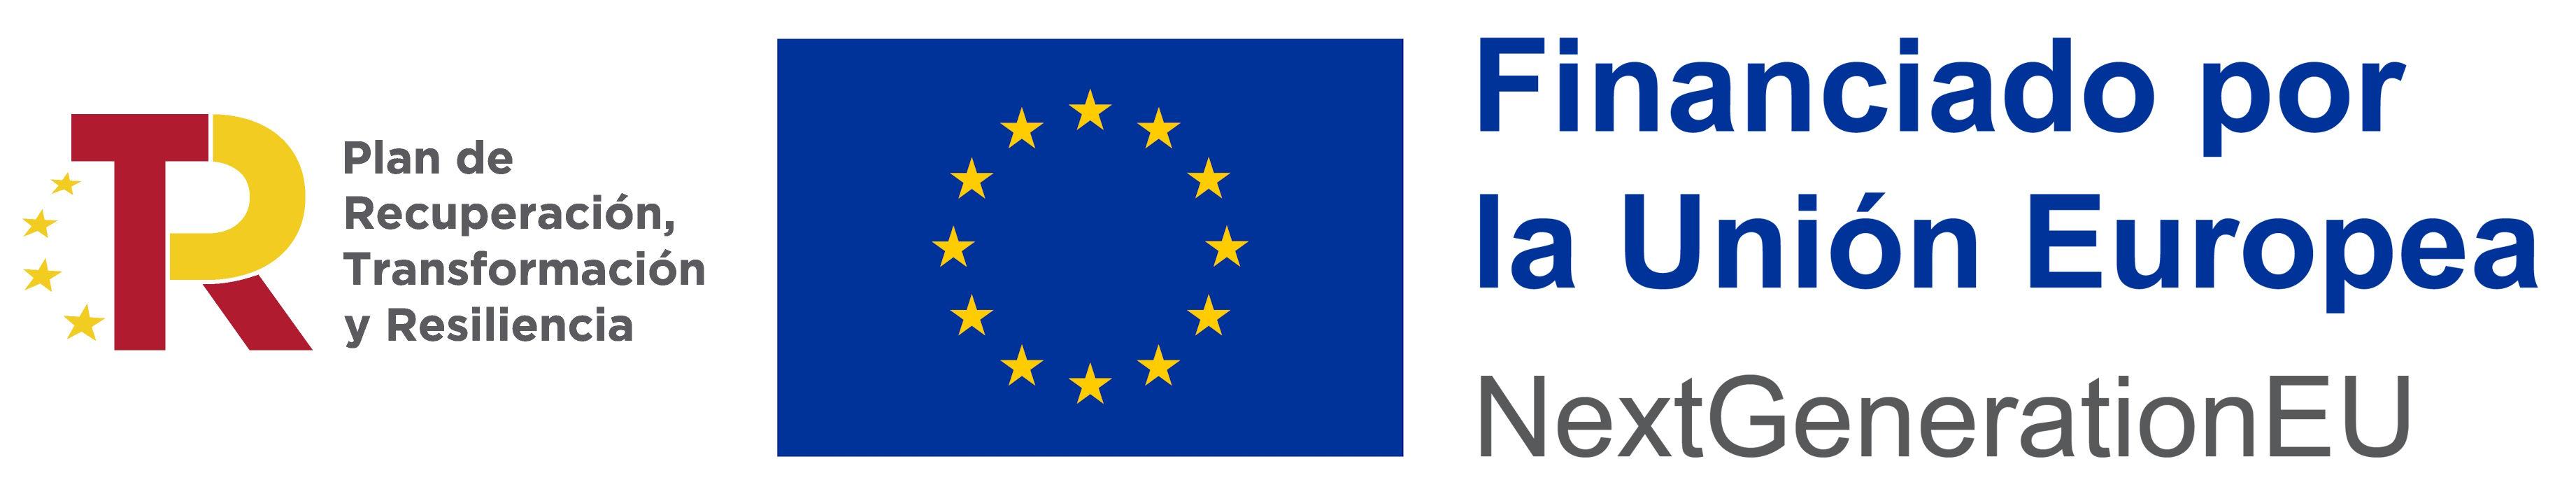 Financiado por la Unión Europea NEXT GENERATION EU Plan de Recuperación, Transformación y Resiliencia